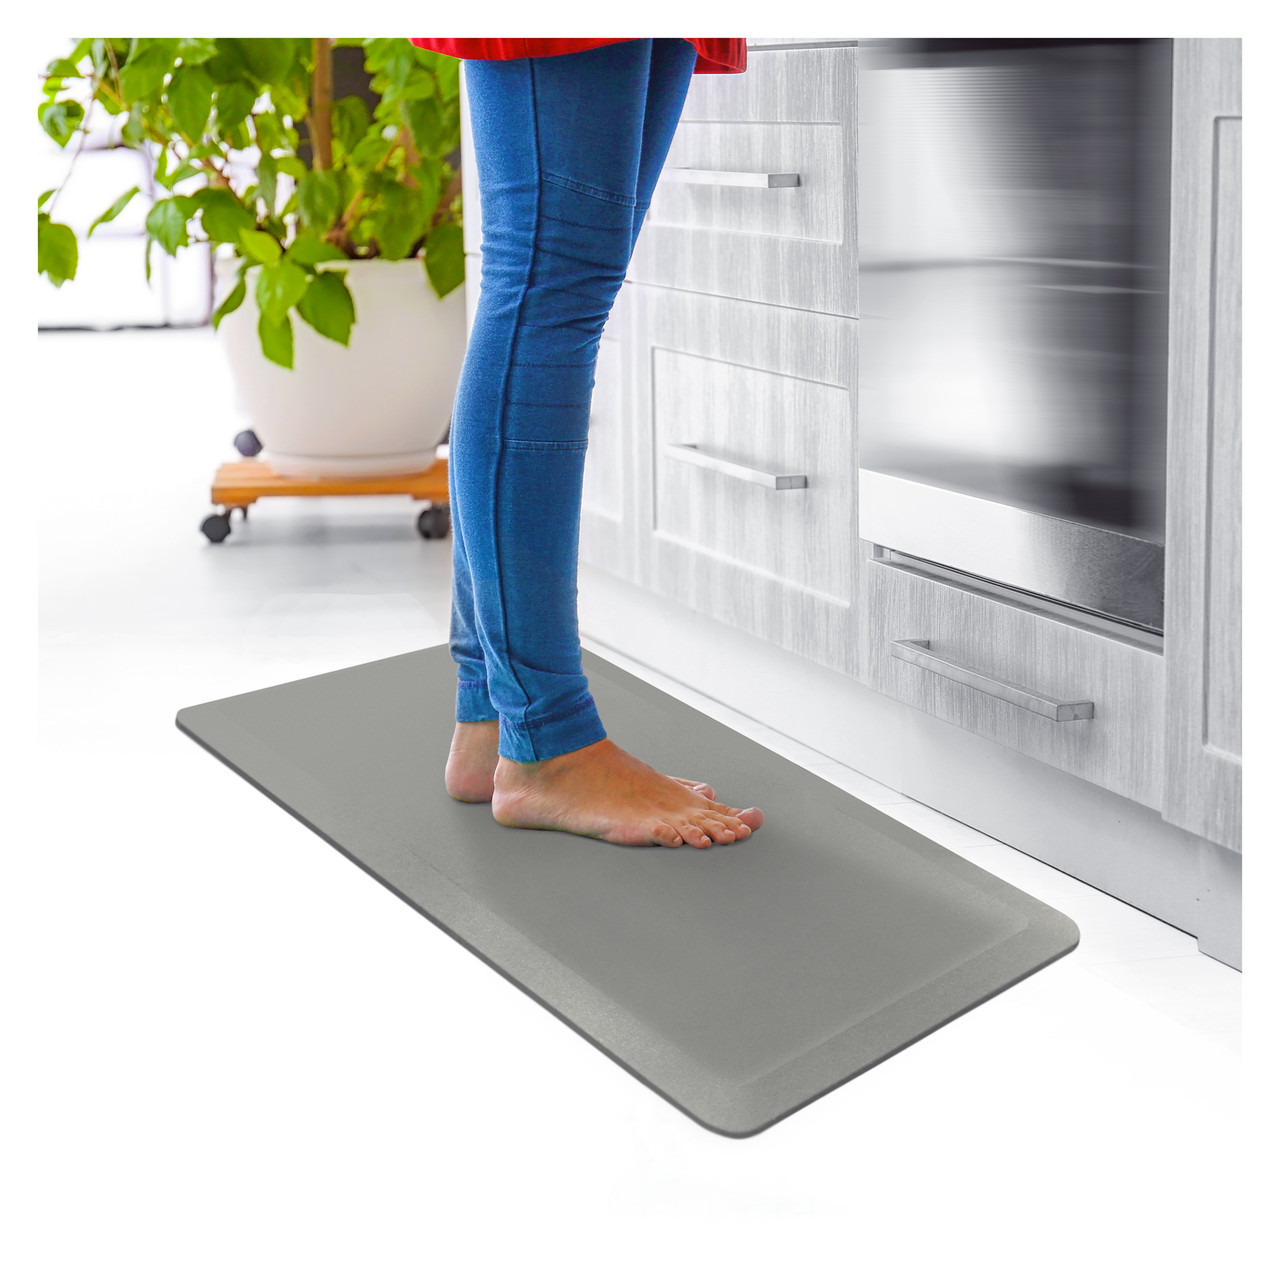 Ultralux Premium Anti-Fatigue Floor Comfort Mat | Durable Ergonomic  Multi-Purpose Non-Slip Standing Support Pad | 3/4 Thick | Gray